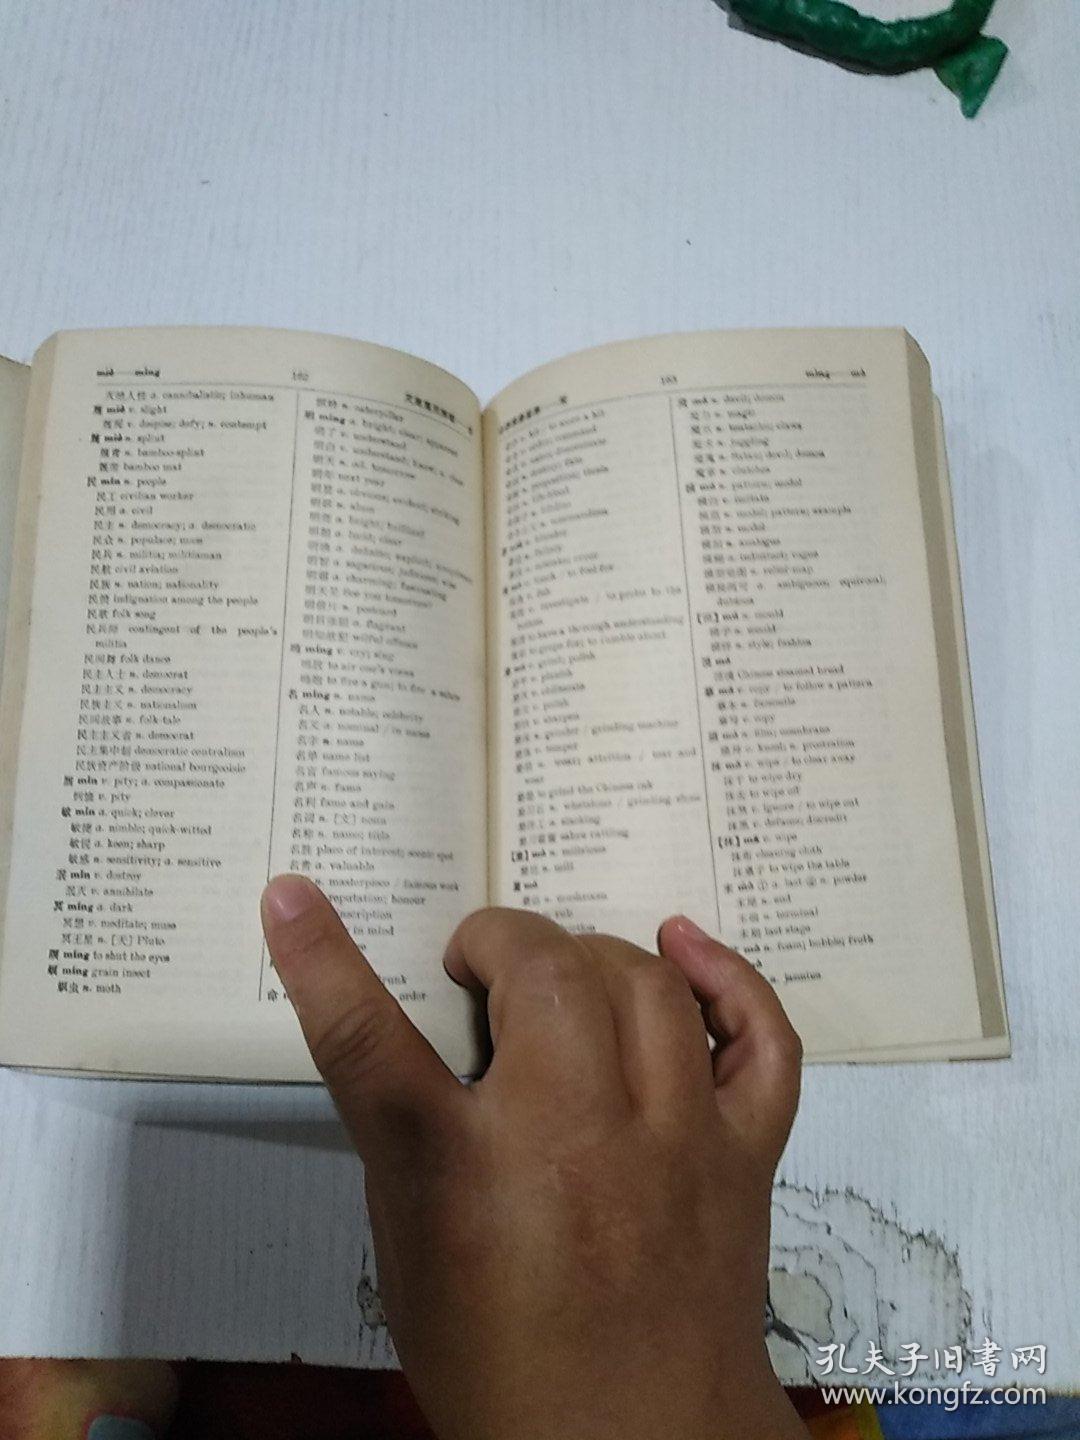 袖珍汉英词典 试用本 上海人民出版社